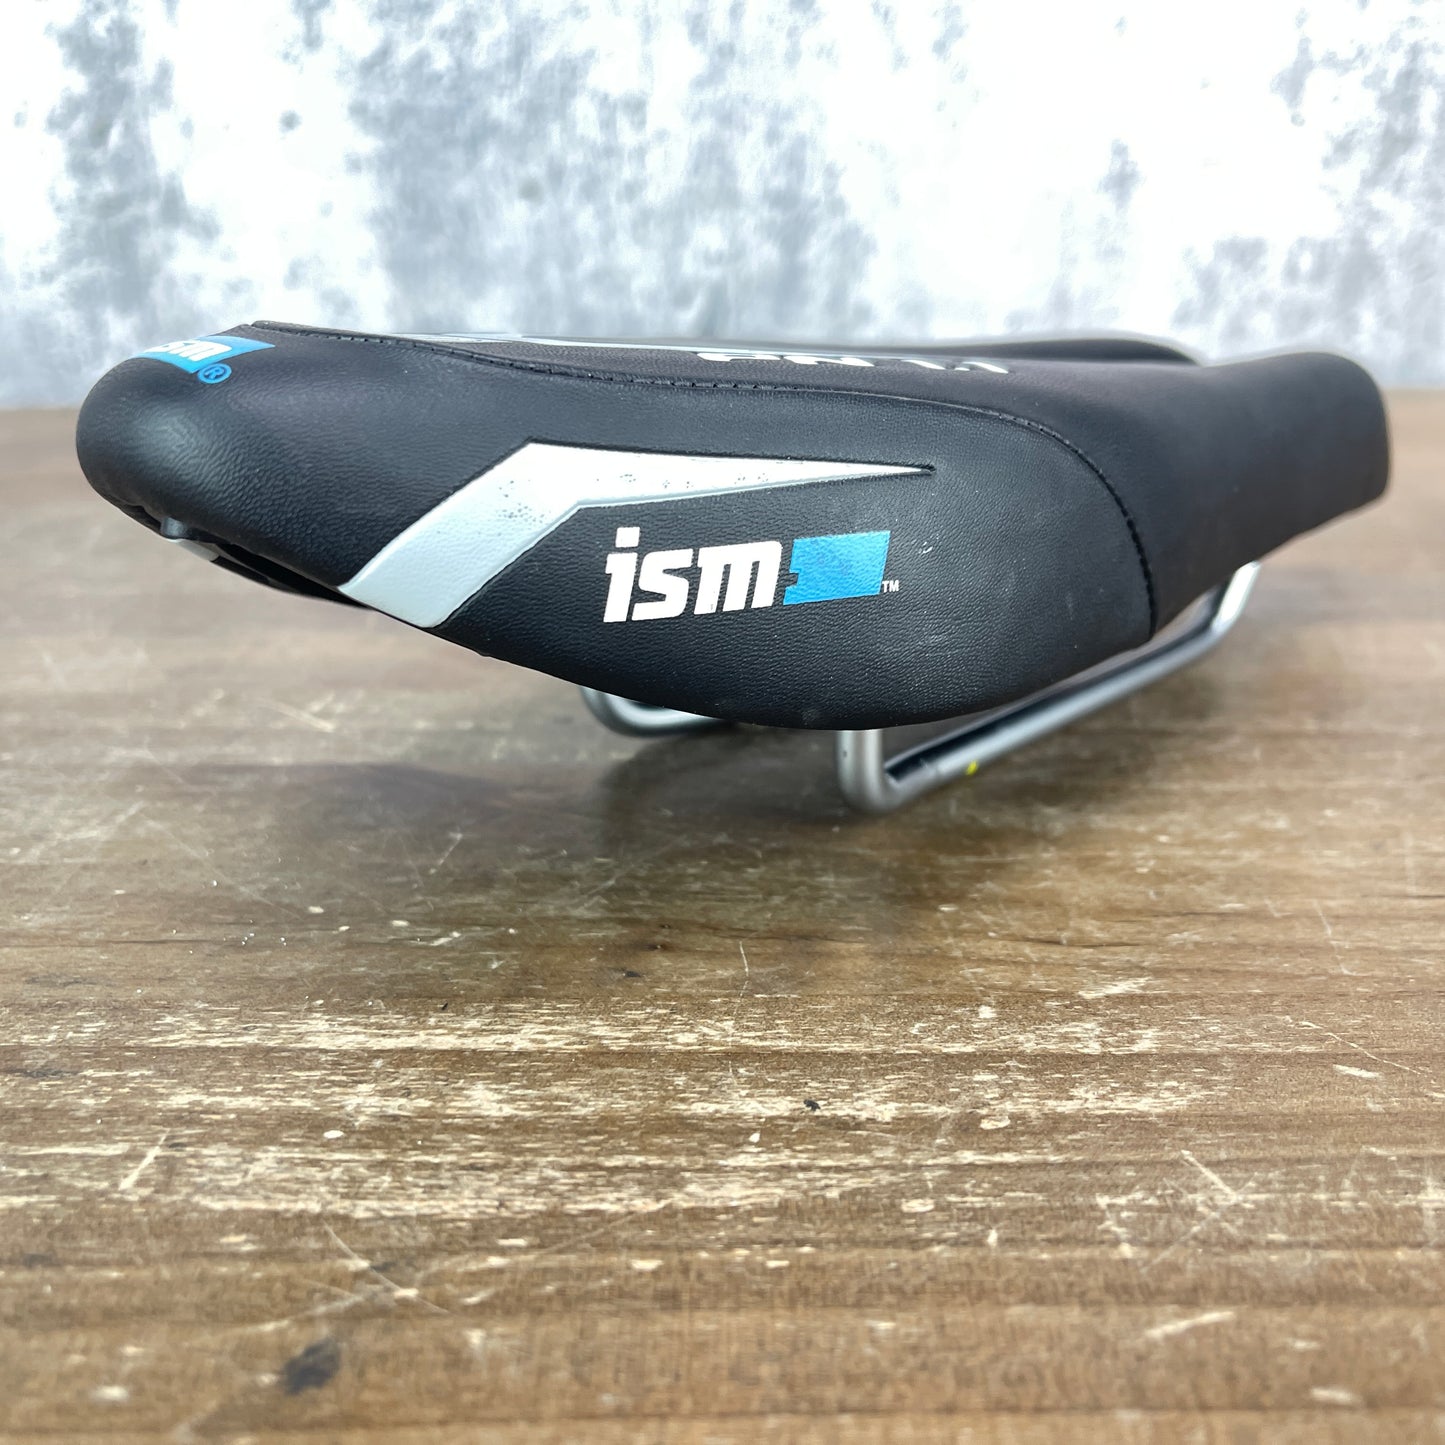 ISM PN 1.1 40 Noseless TT/Triathlon 110mm Alloy Rails Saddle 384g